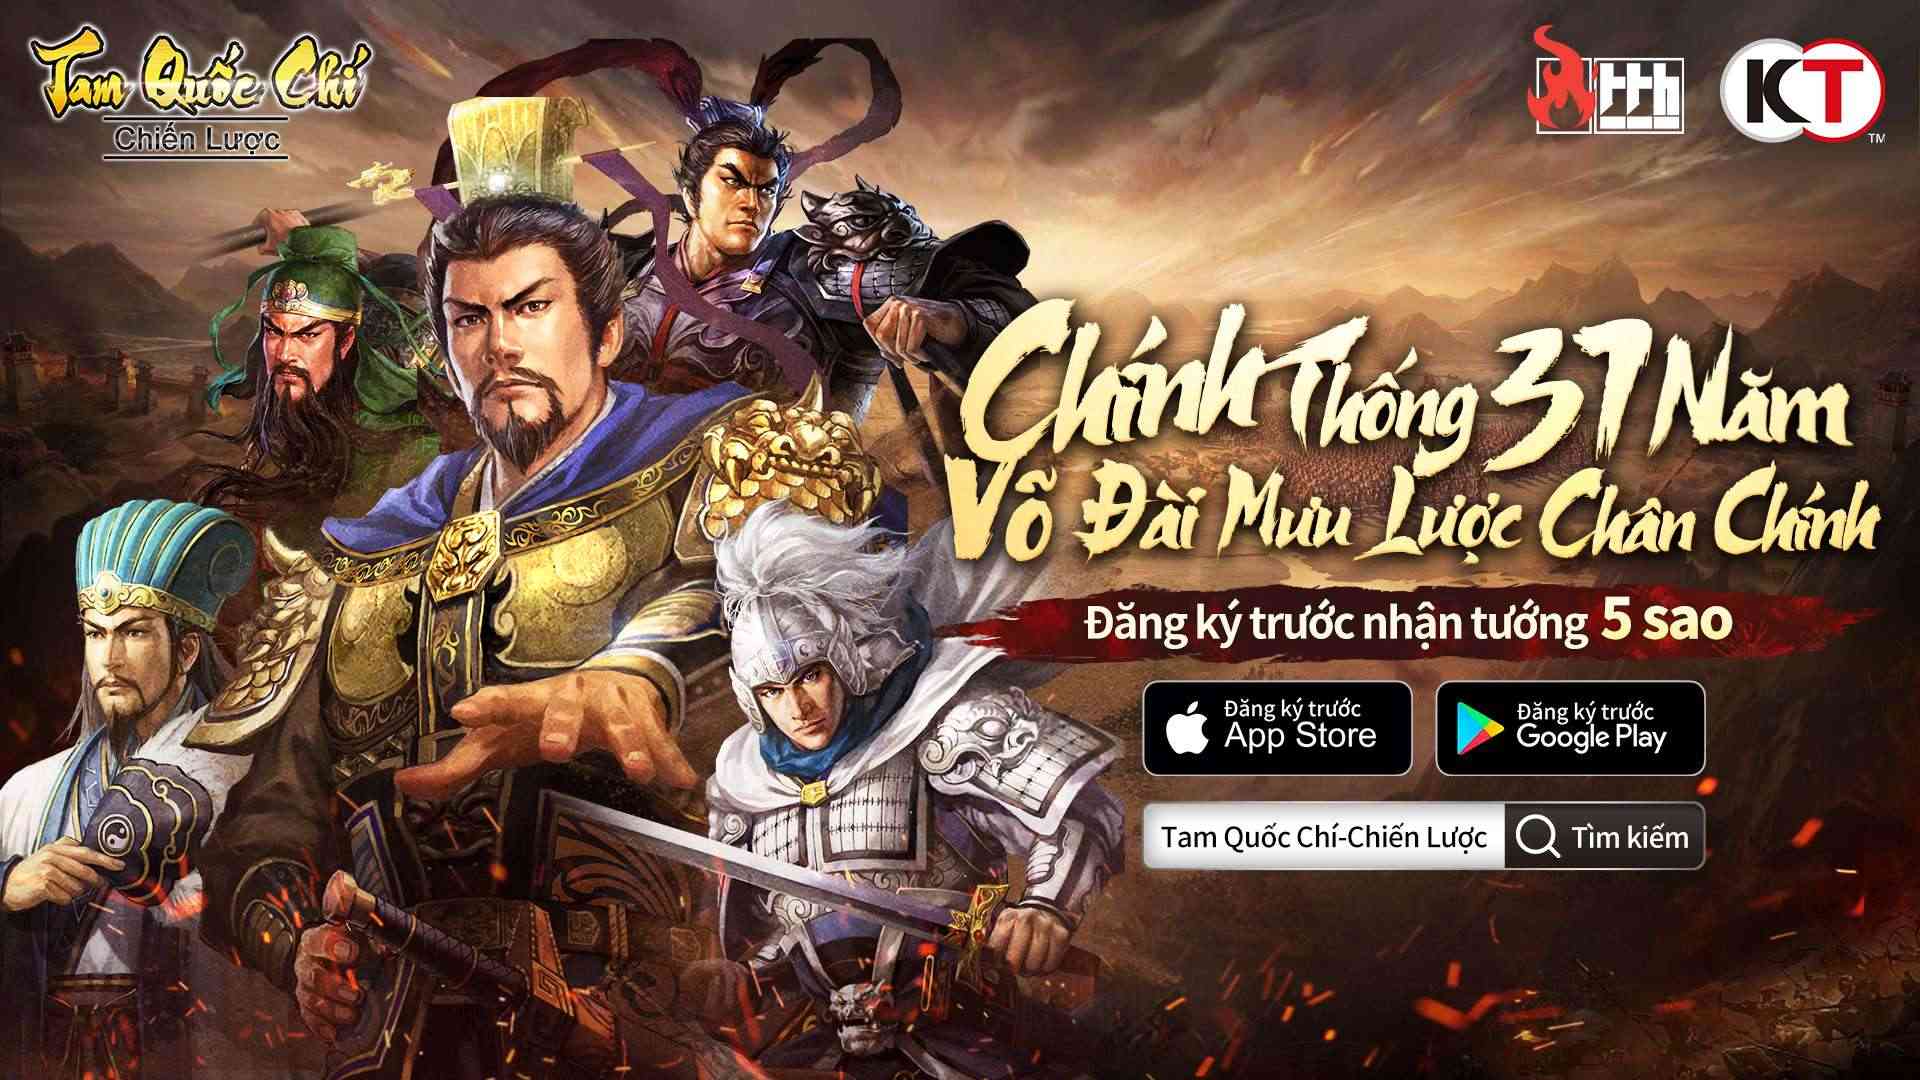 Tam Quốc Chí – Chiến Lược công bố giải đấu với mức tiền thưởng cao nhất lịch sử dòng game chiến lược ở Việt Nam